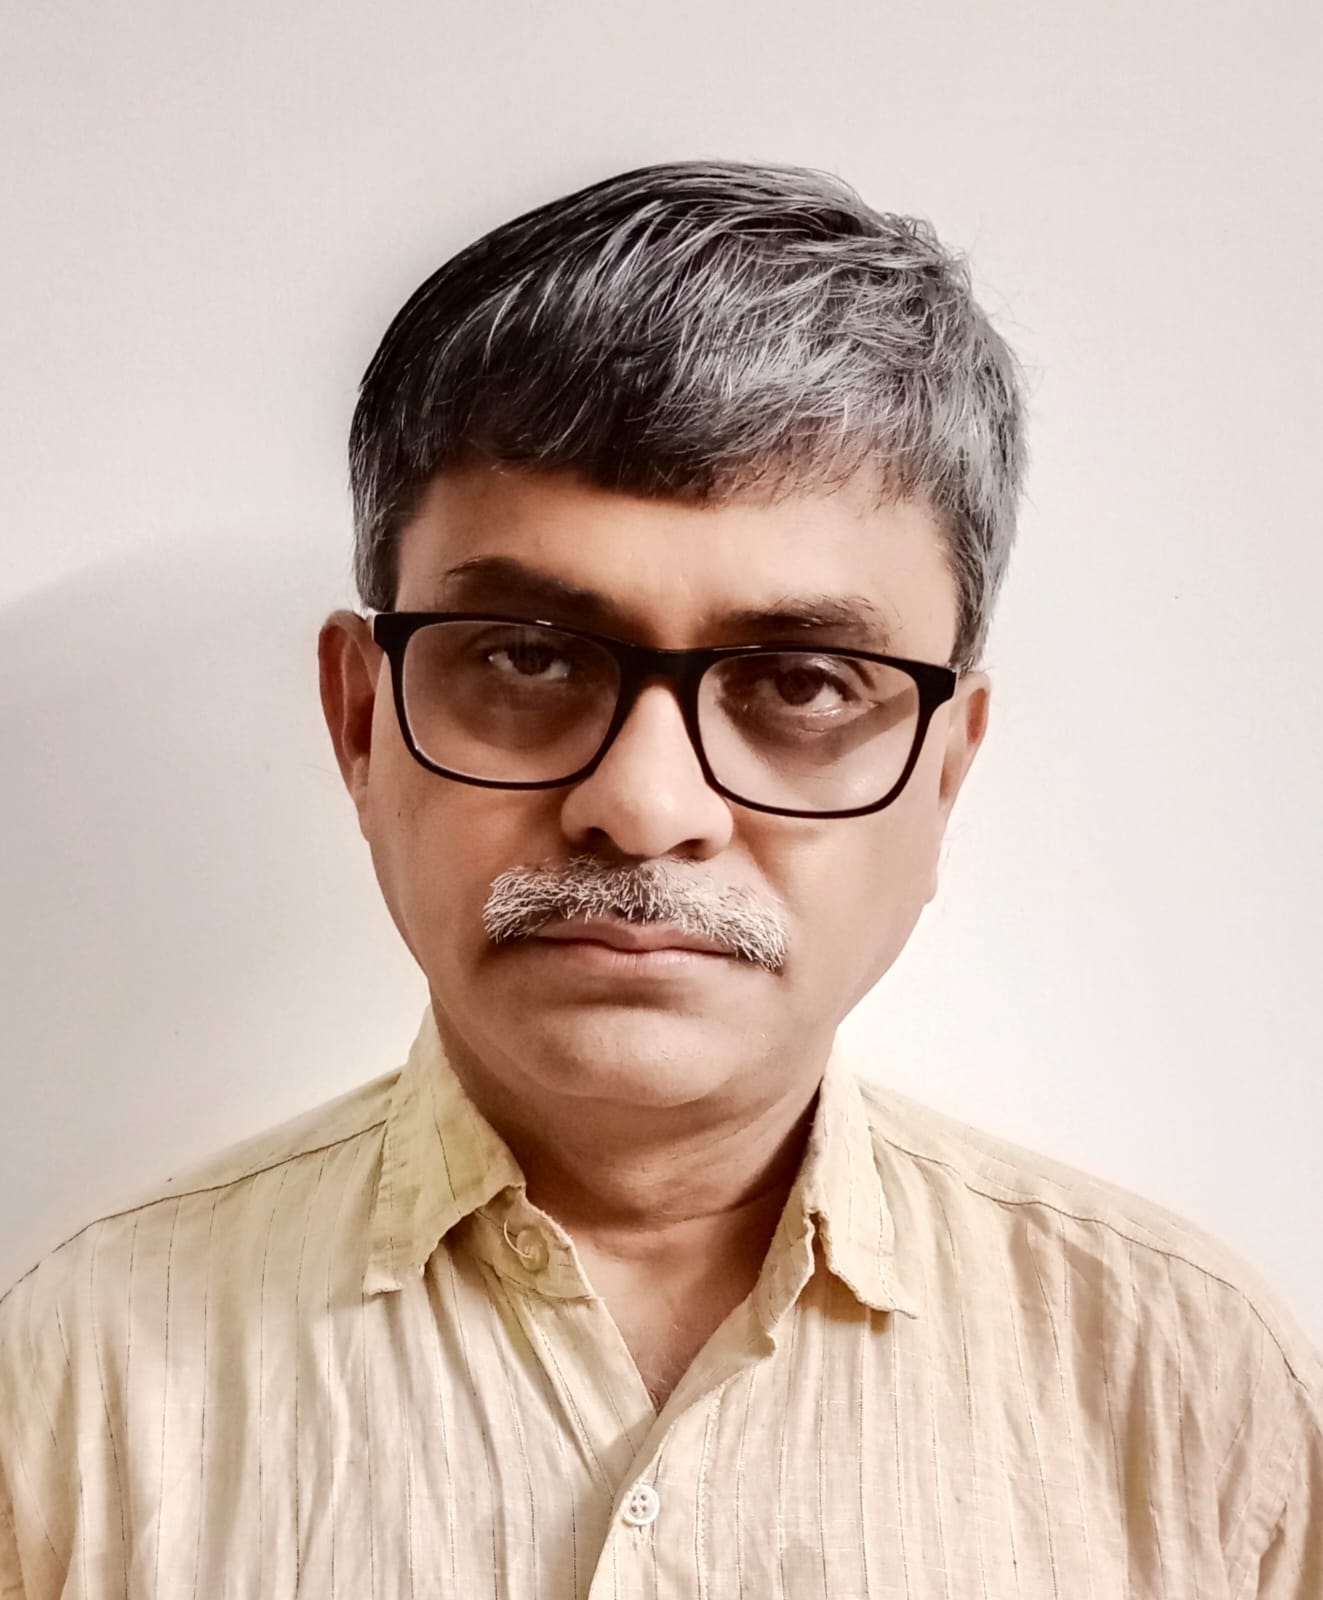 Prof. Sibasish Ghosh